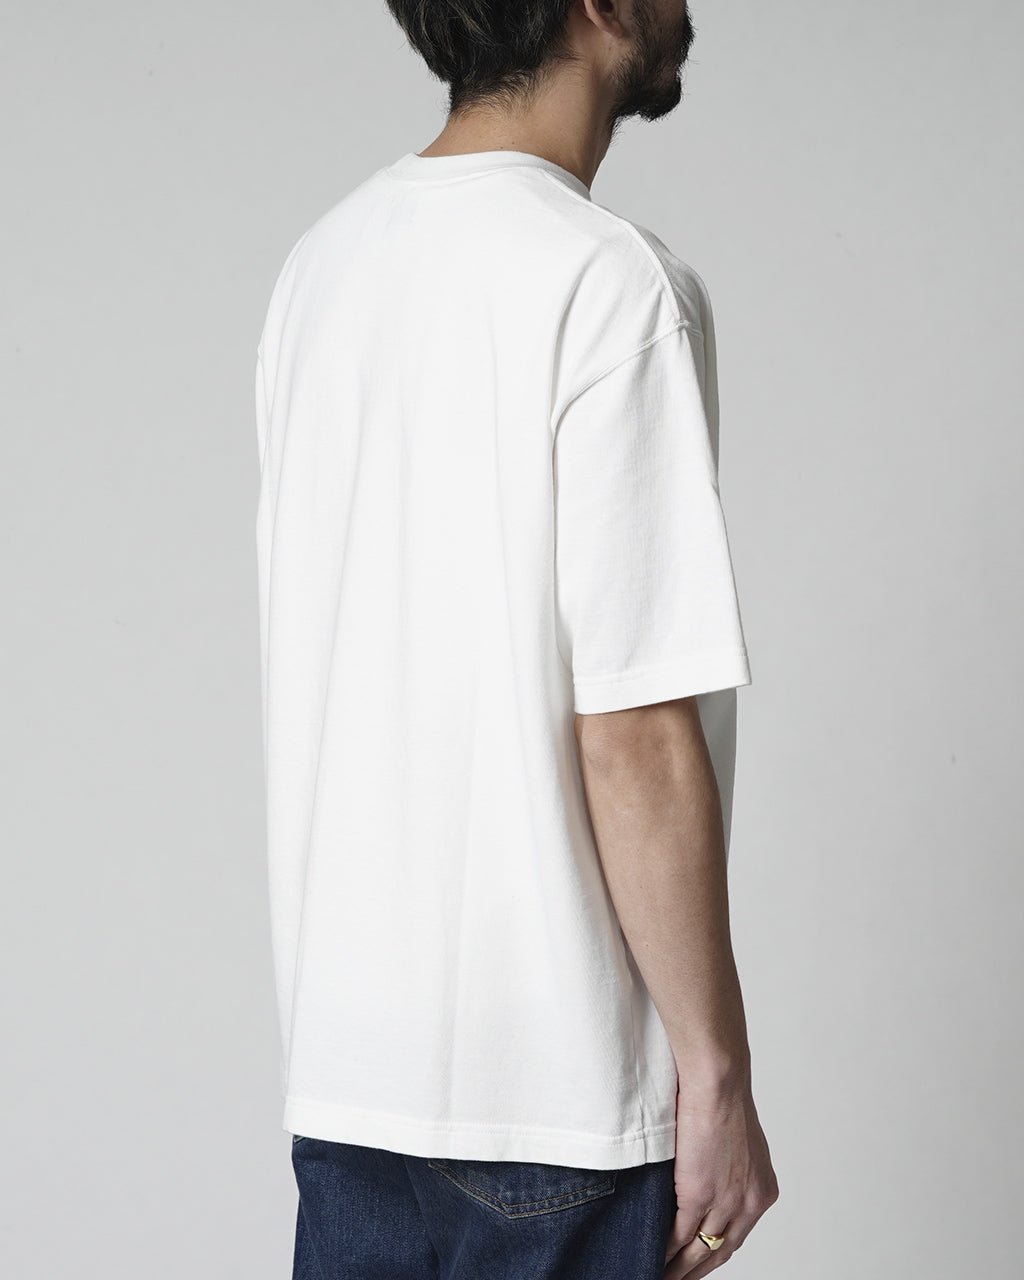 CIOTA シオタ ショートスリーブ Tシャツ Short Sleeve T-shirt CSLM-142 【送料無料】正規取扱店